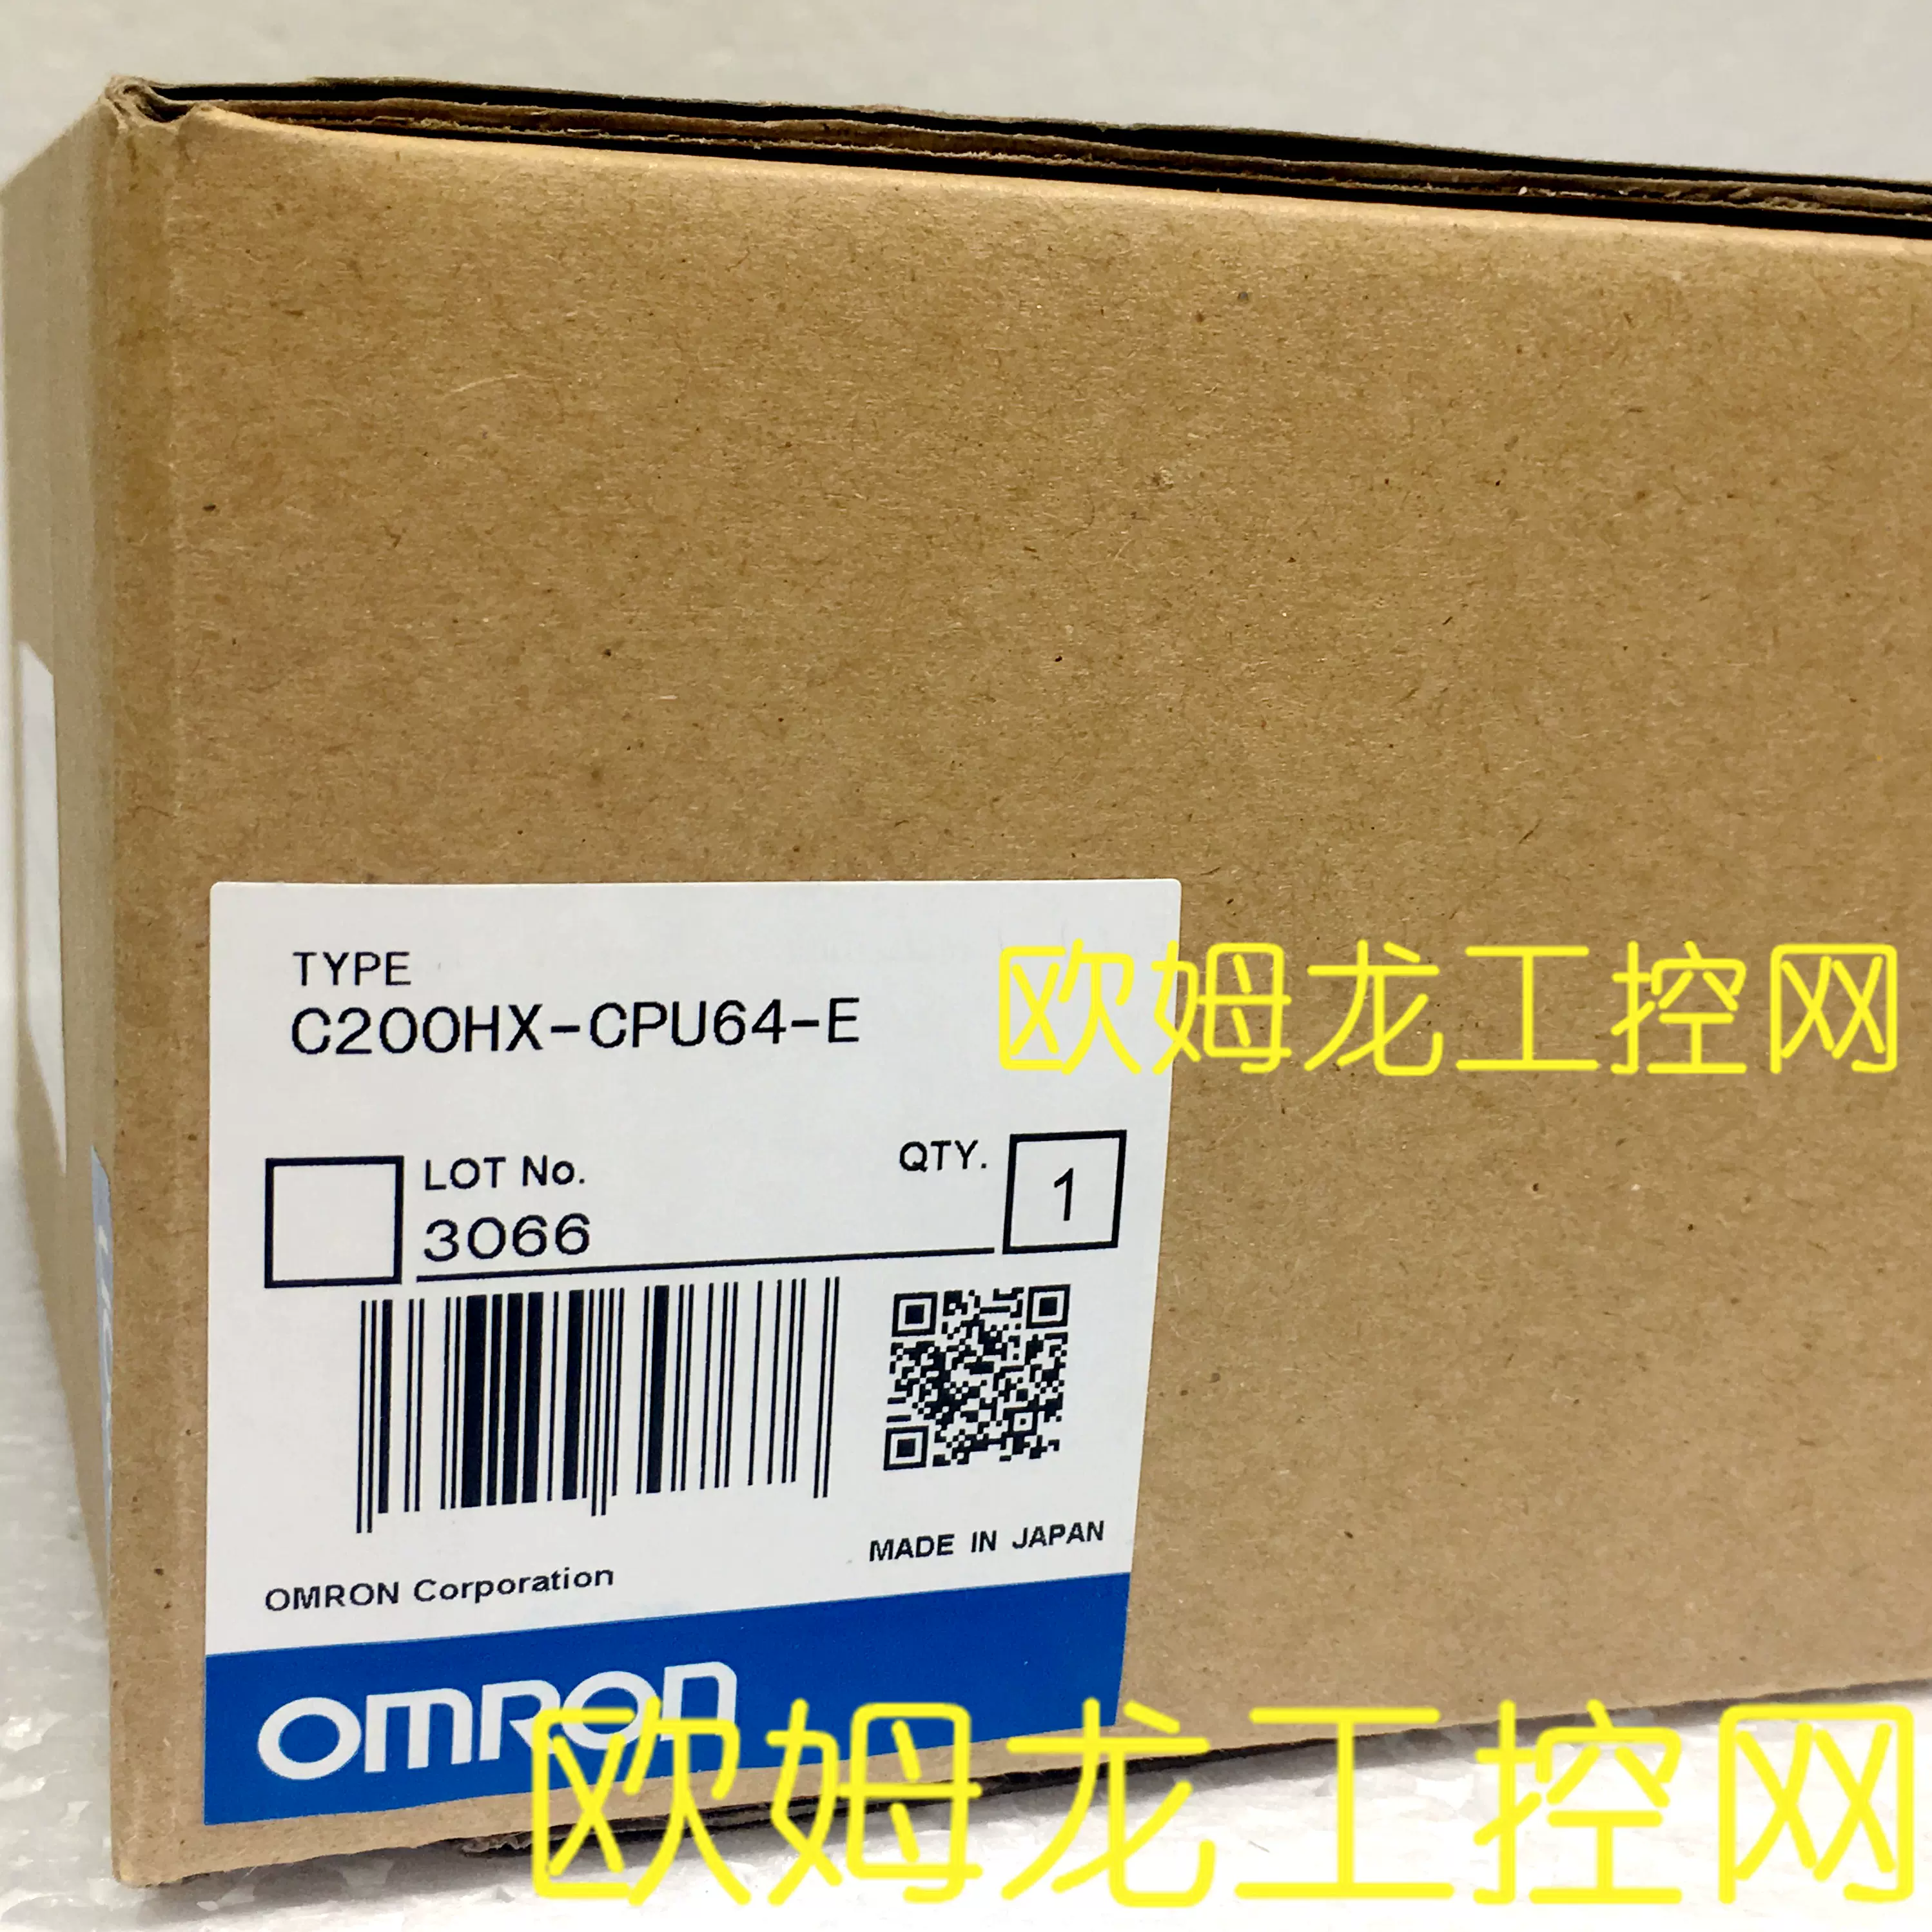 欧姆龙OMRON PLC CPU单元C200HX-CPU64-E全新原装未拆封现货-Taobao